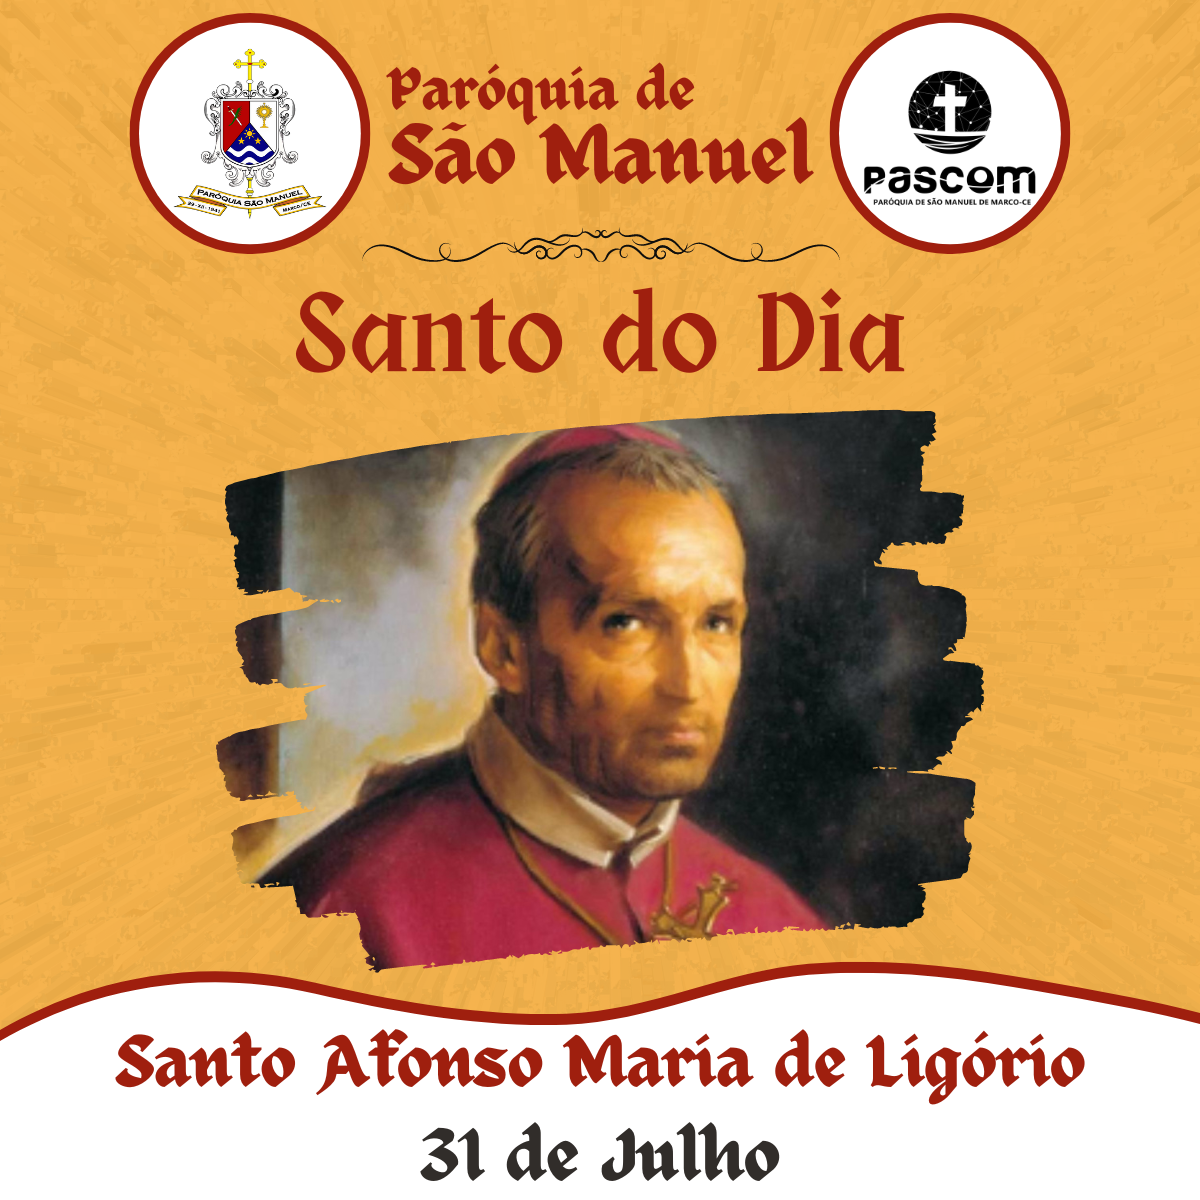 Afonso Maria de Ligório. Créditos: Paróquia de São Manuel